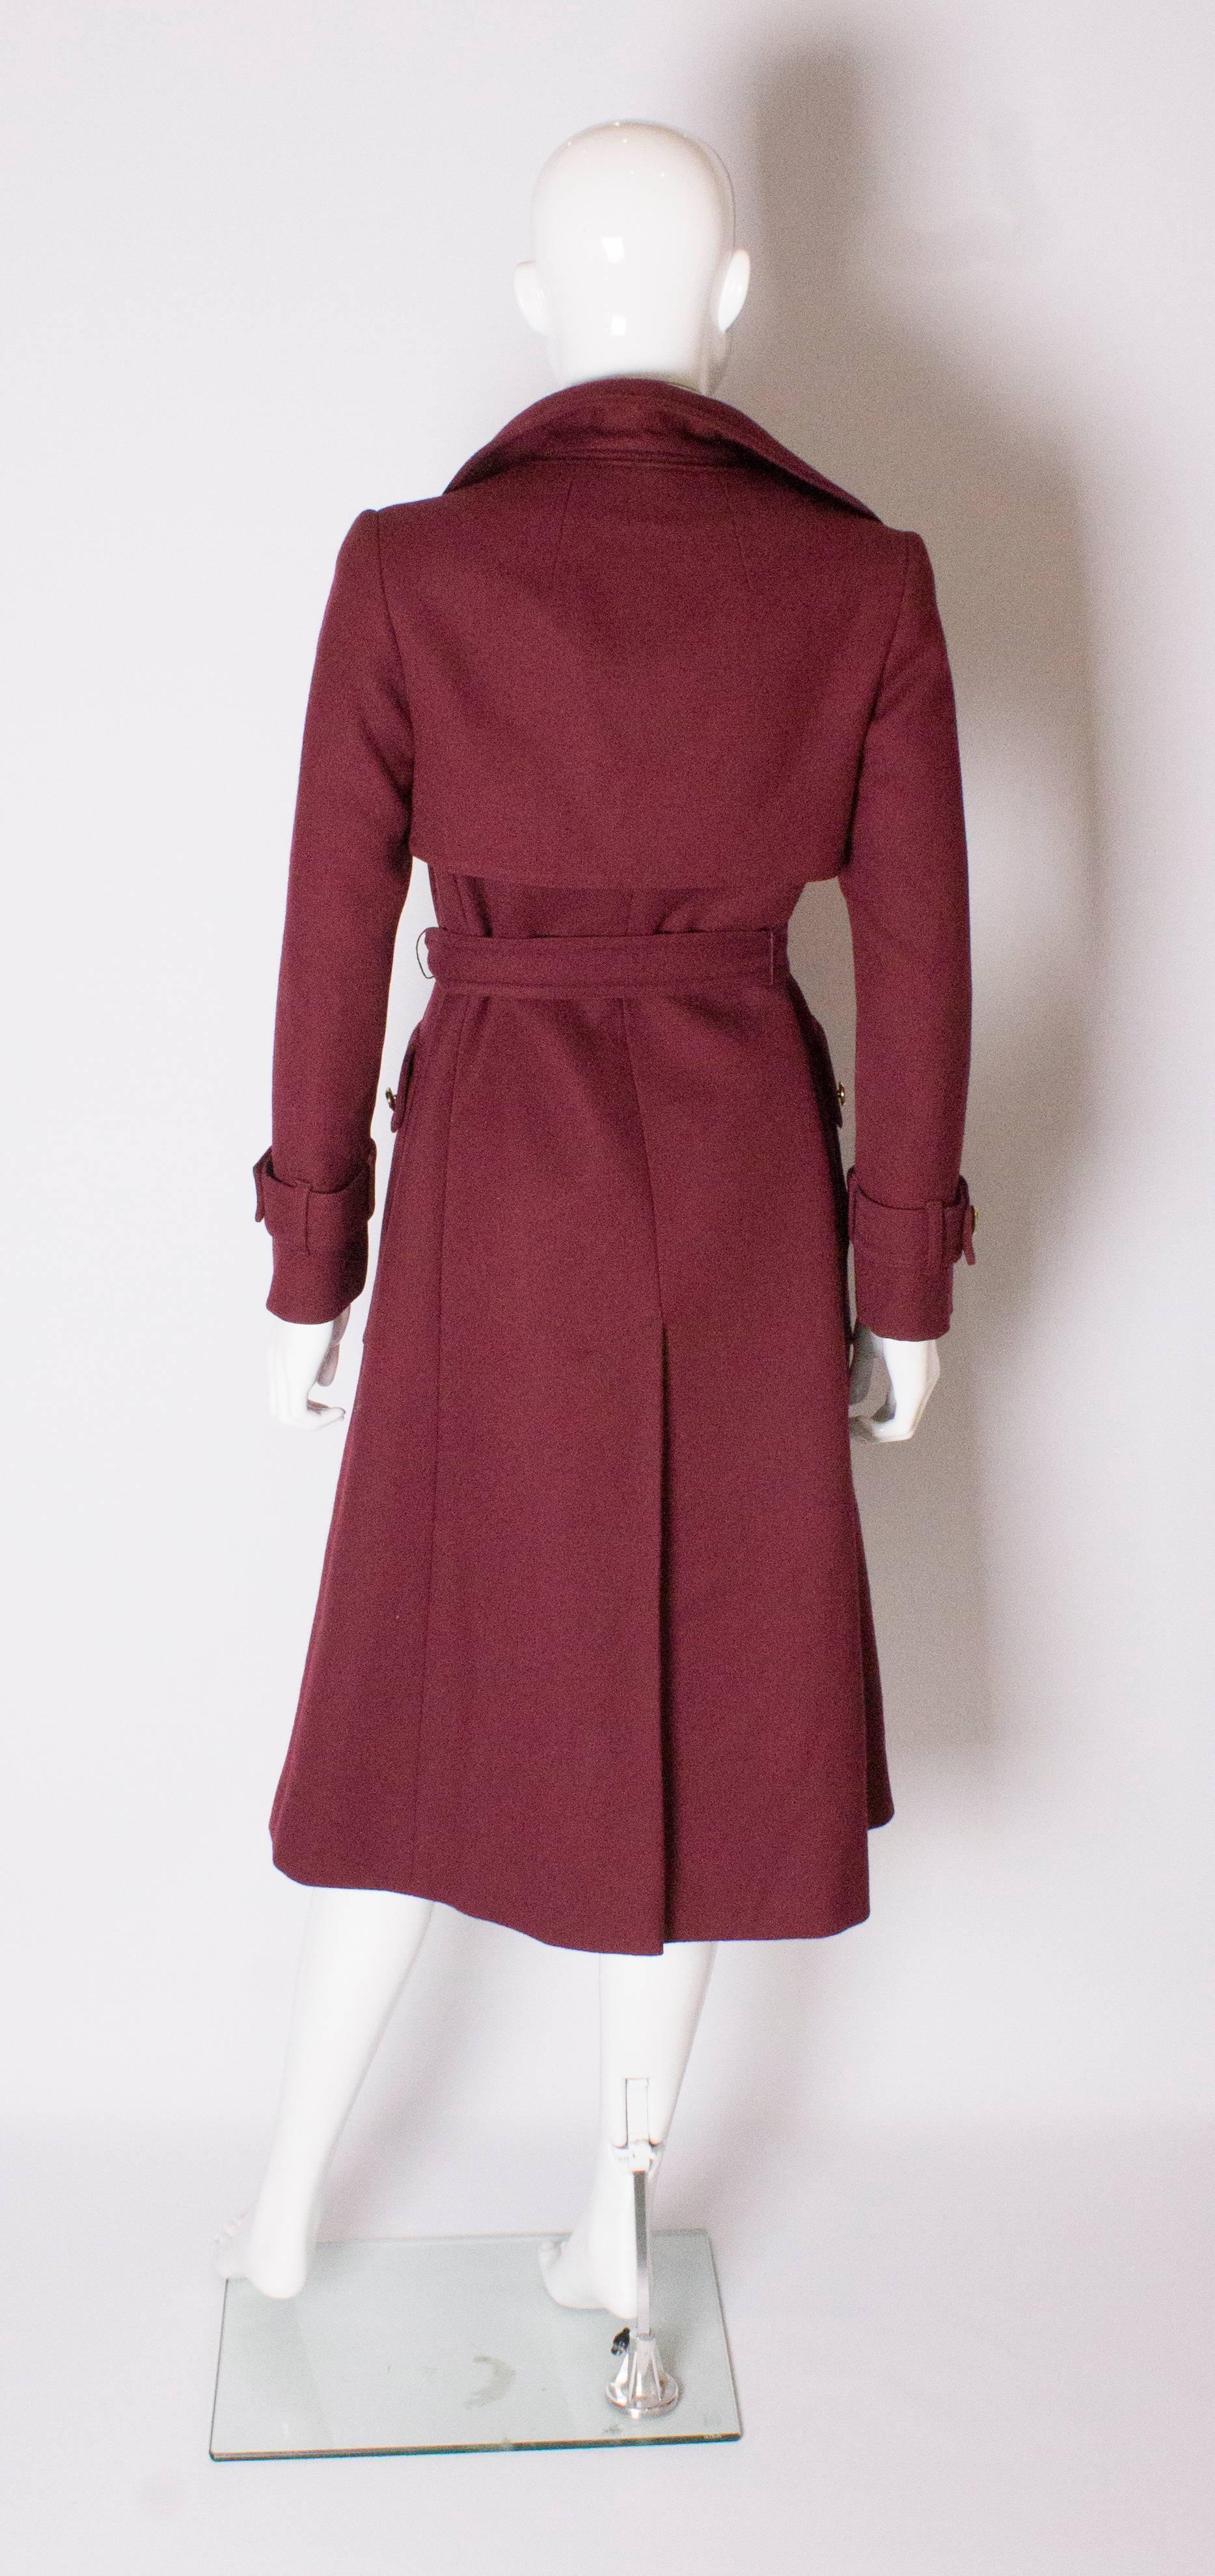 Brown Chic Vintage Burgundy Wool Coat by Aquascutum